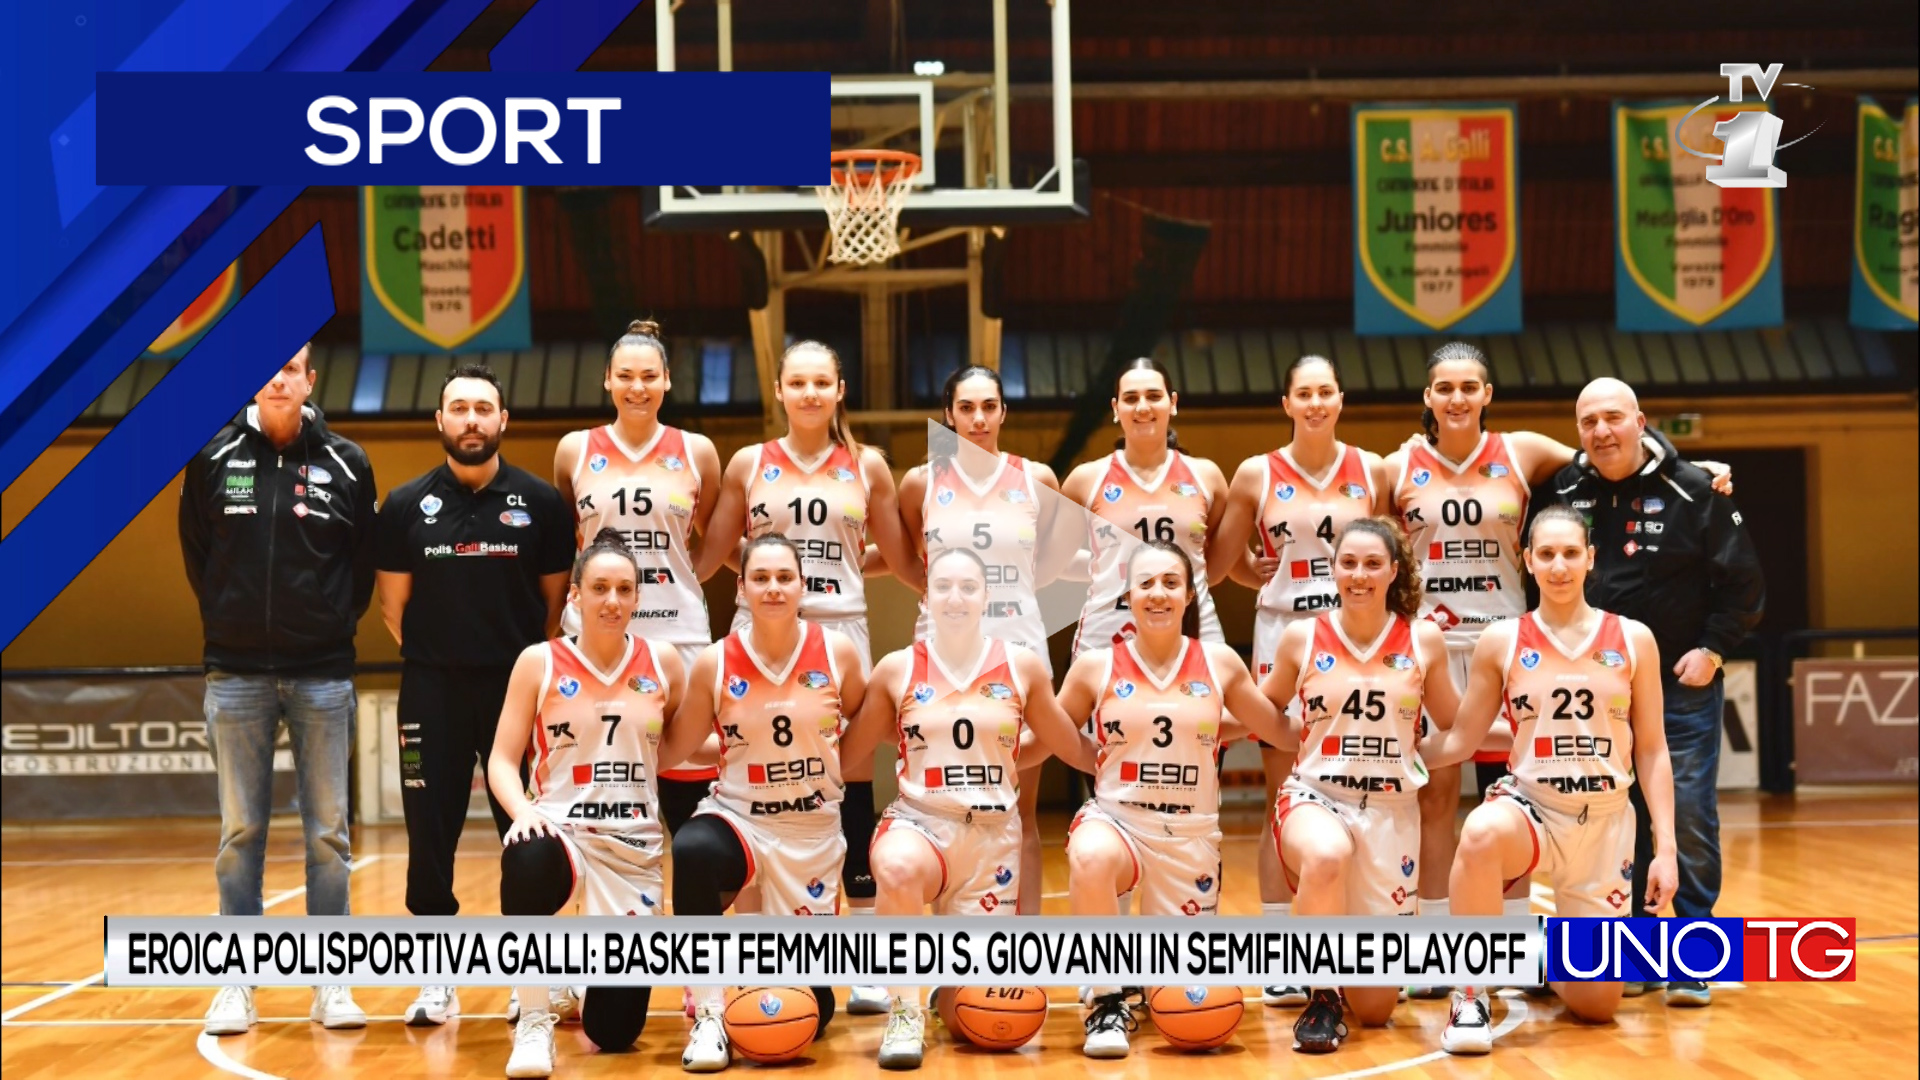 Eroica Polisportiva Galli: basket femminile di San Giovanni in semifinale playoff